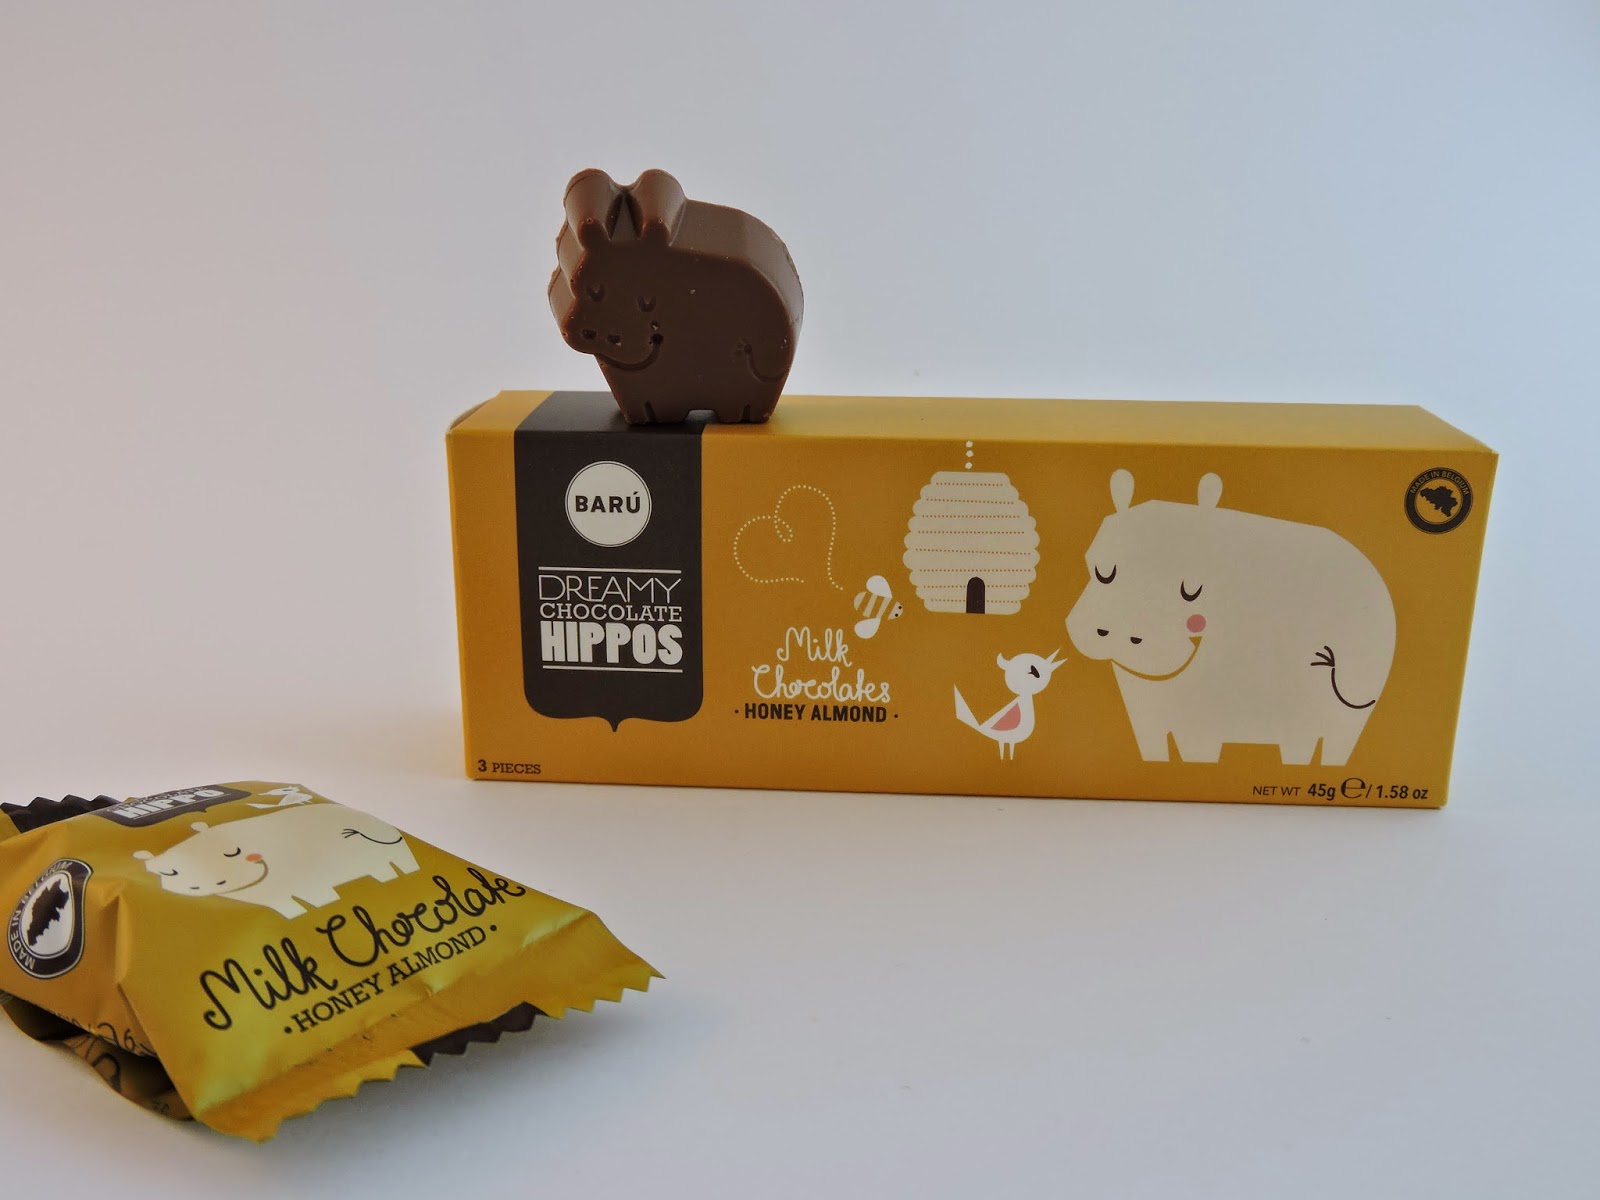 Dreamy chocolate hippos Barú